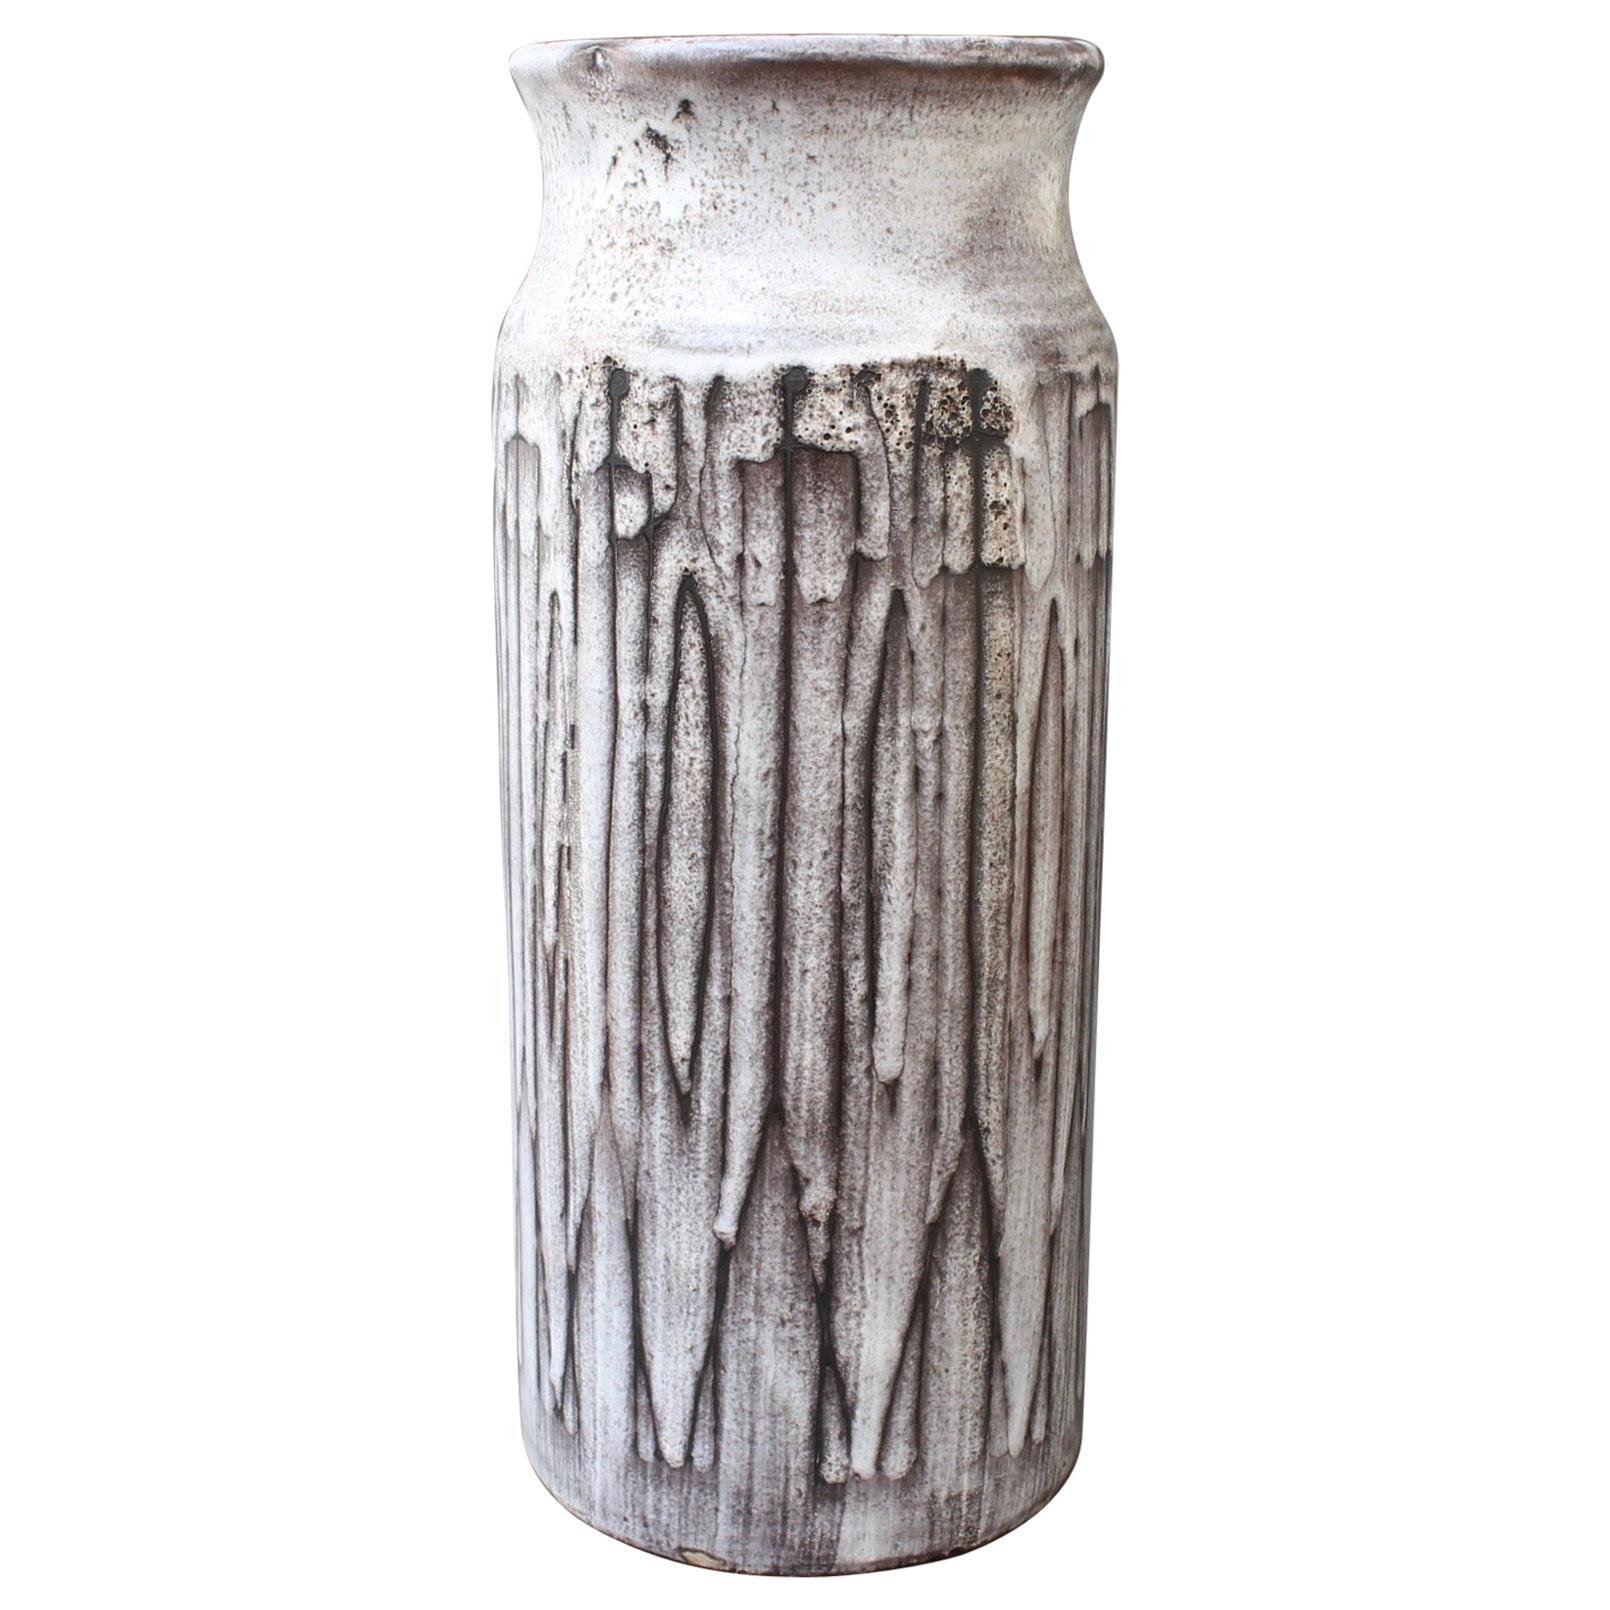 Midcentury Ceramic Vase by Jacques Pouchain Atelier Dieulefit, circa 1960s